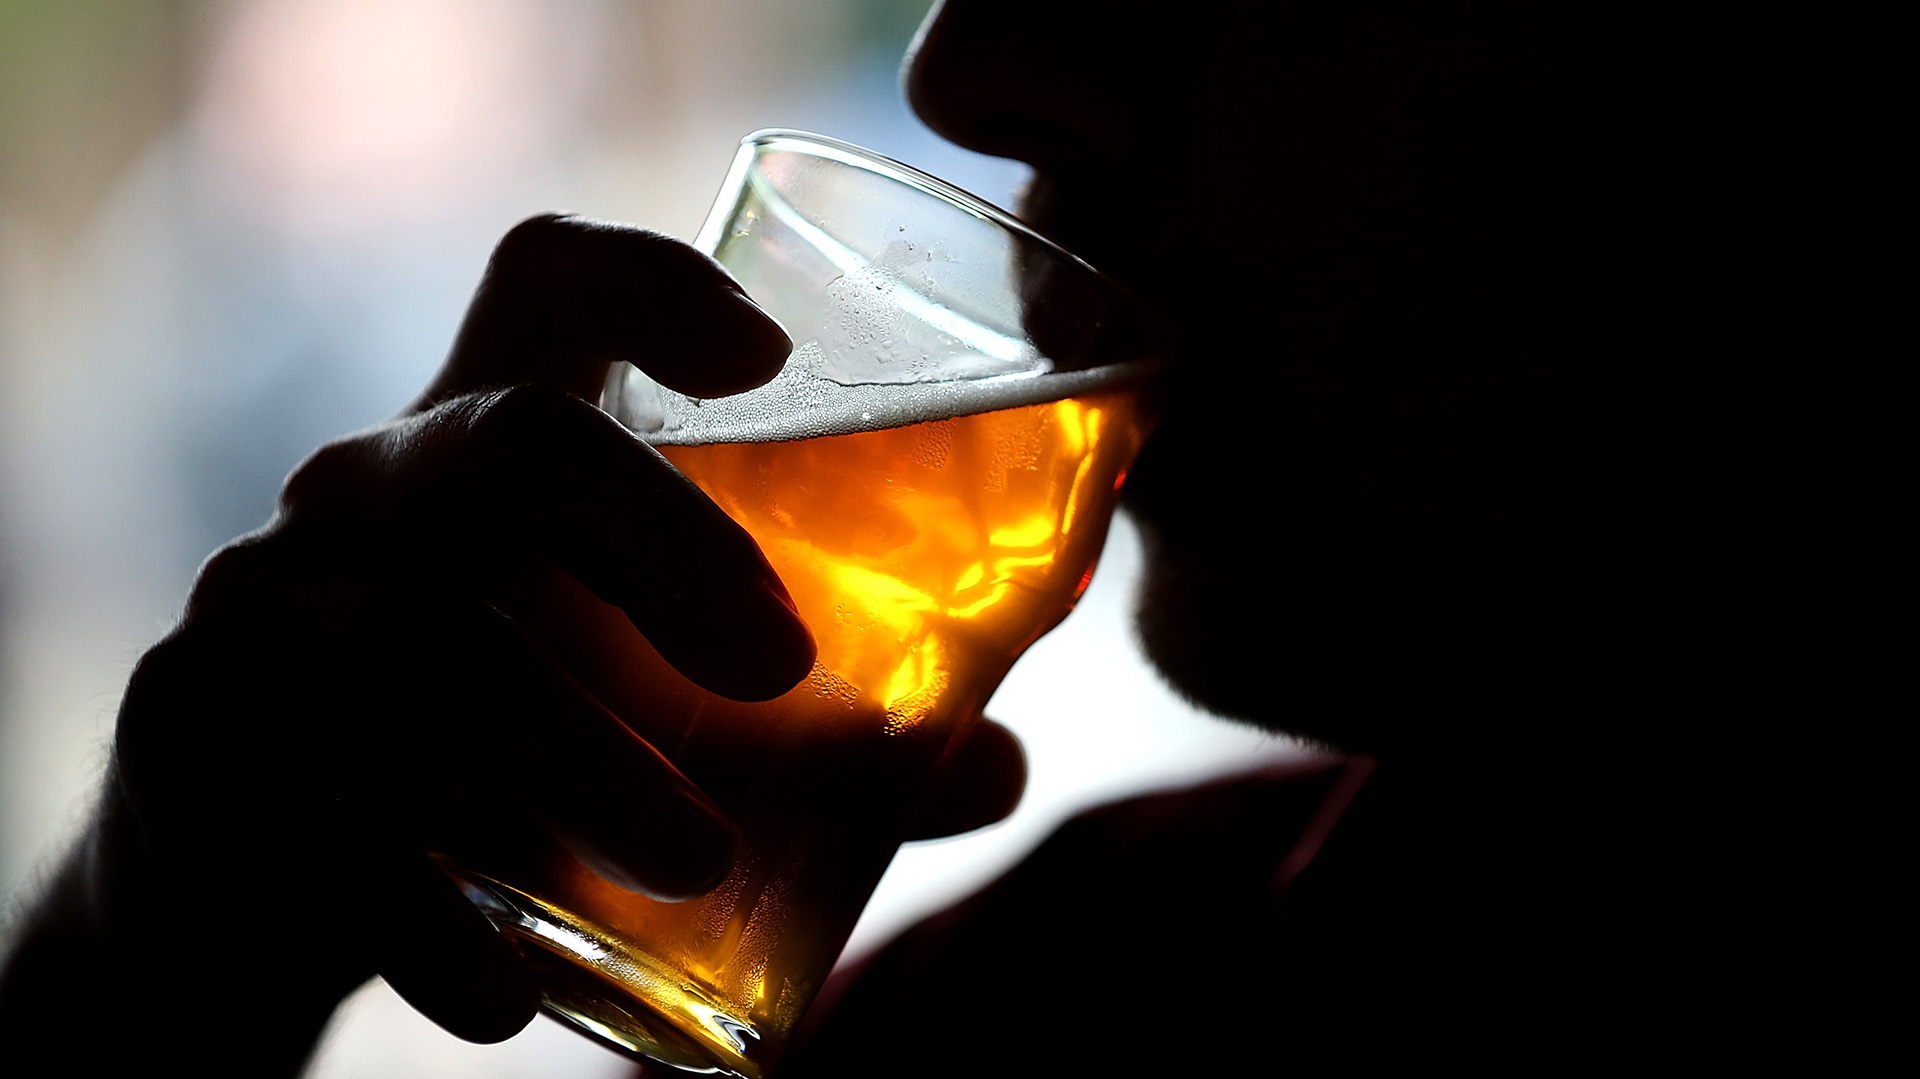 Los hombres que beben una cerveza al día tienen bacterias intestinales más diversas, según un estudio 